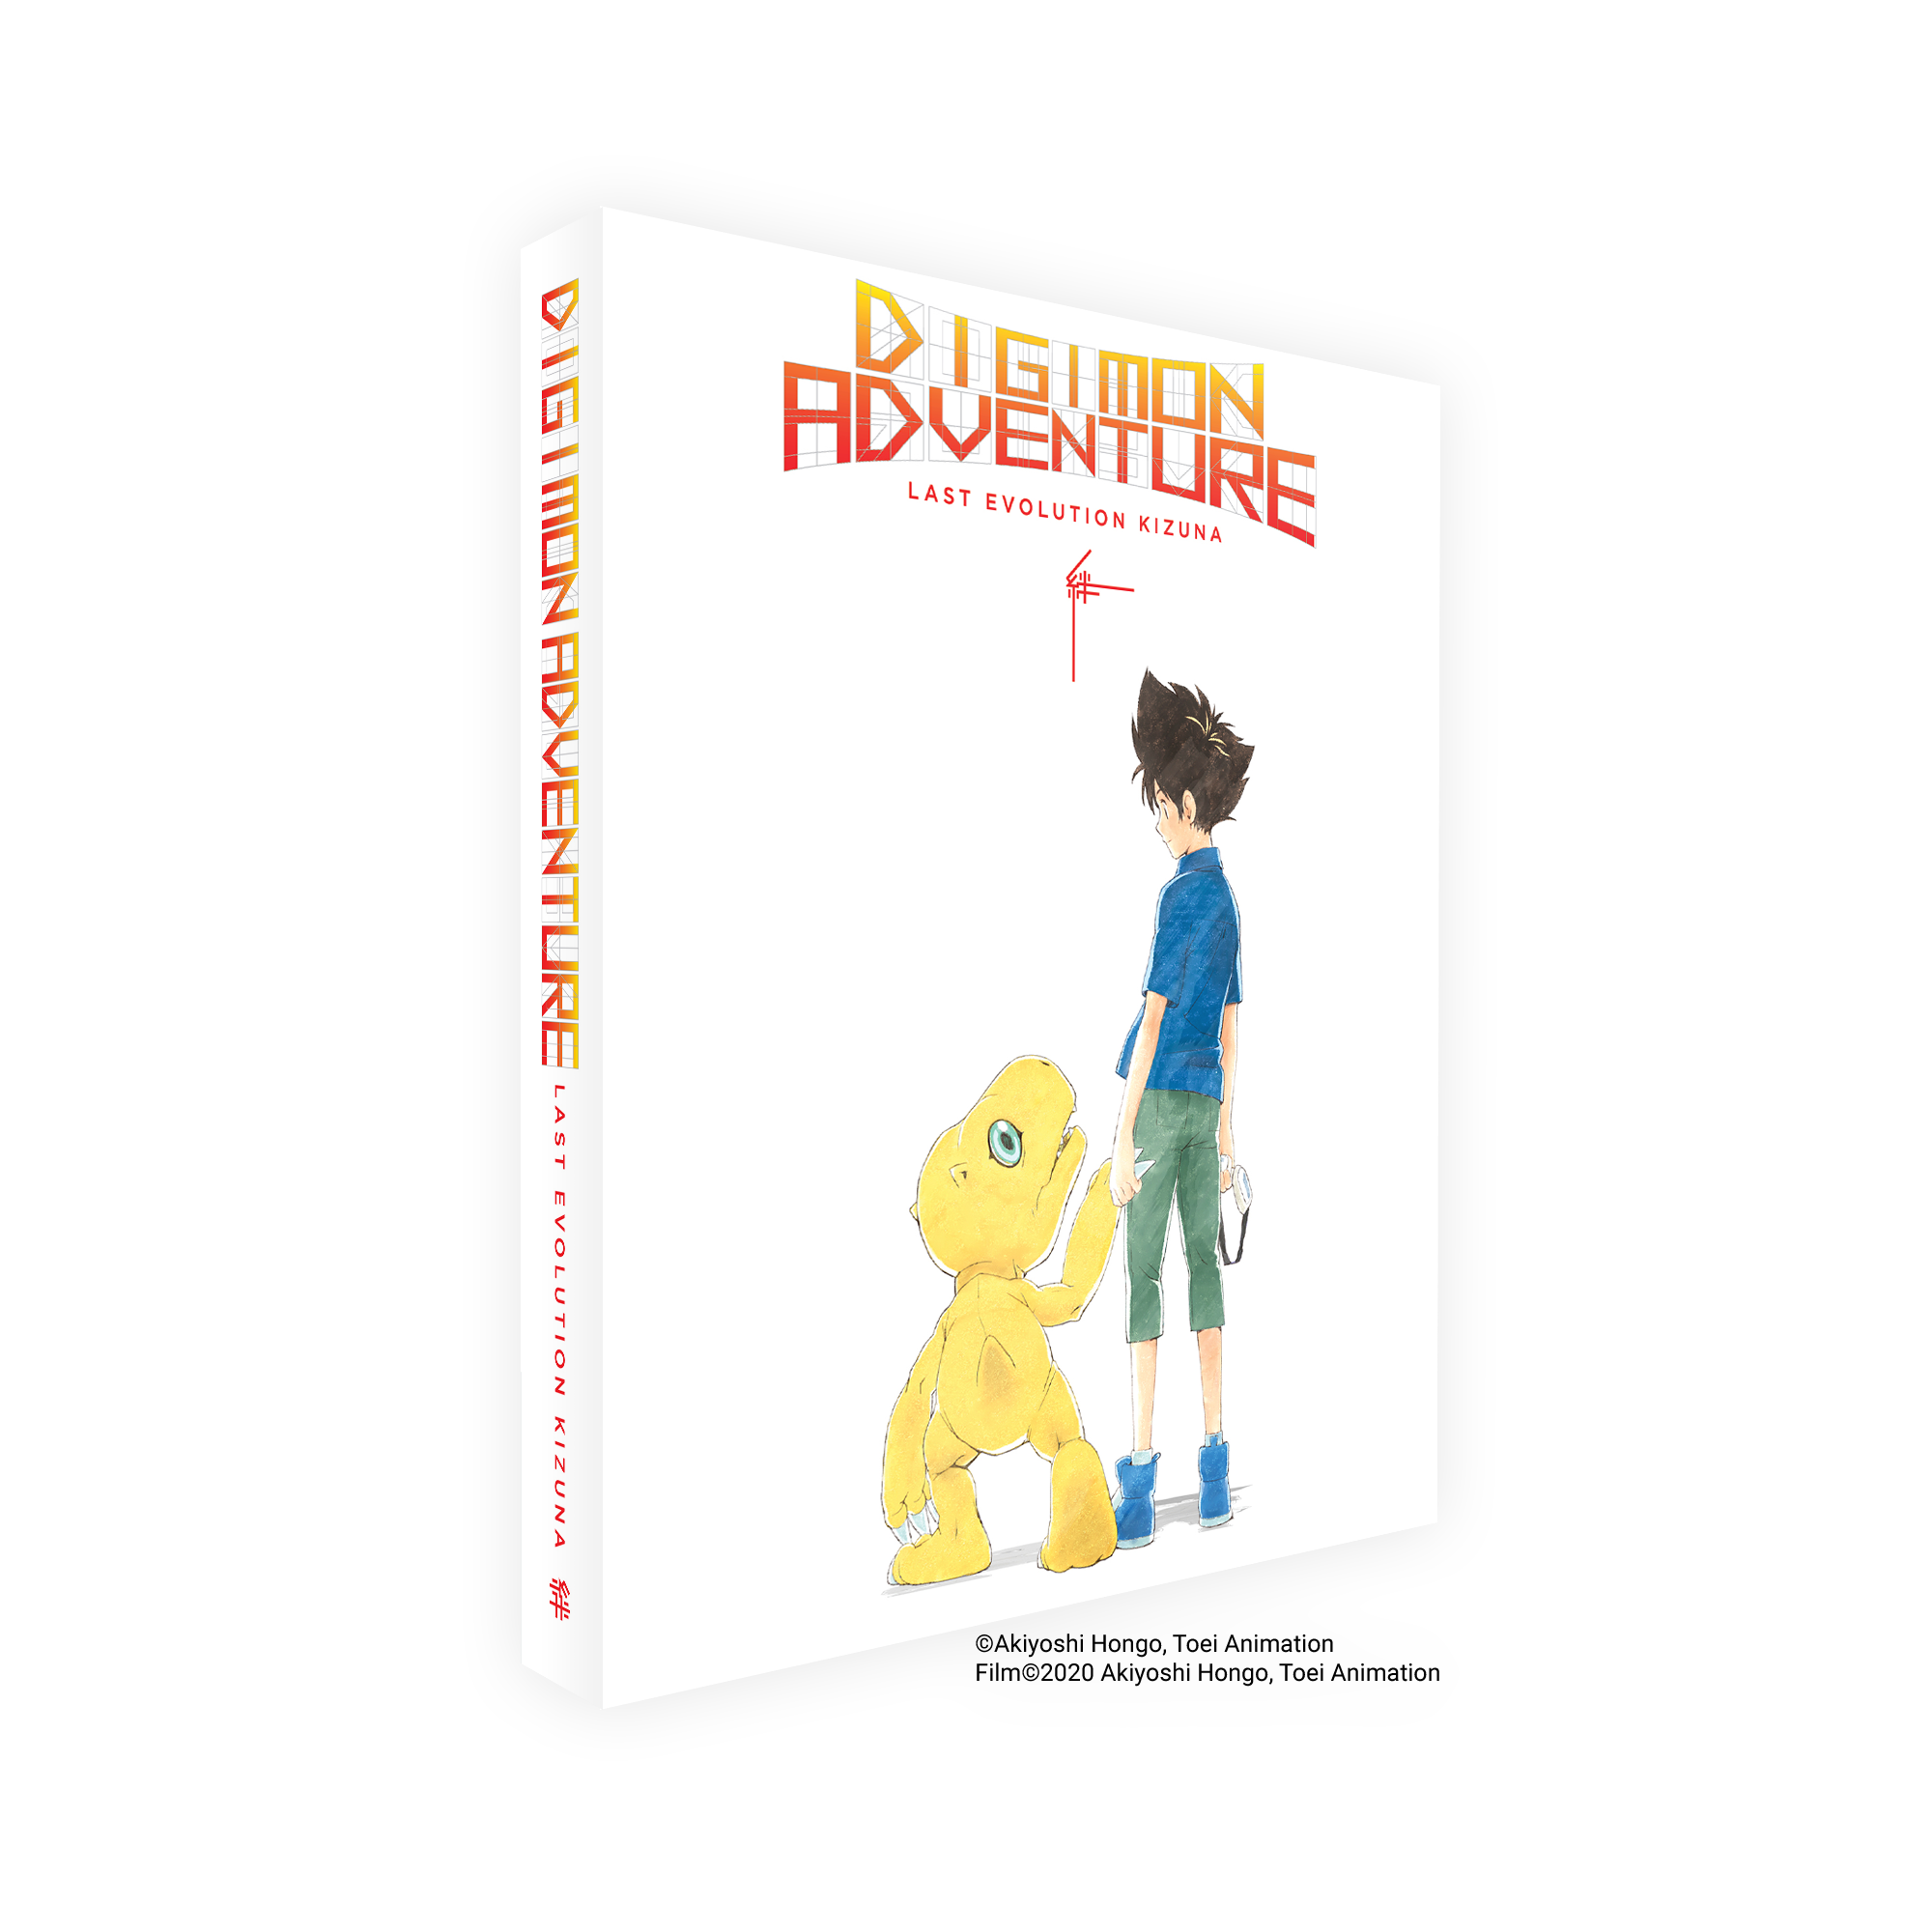 Digimon Adventure: Last Evolution Kizuna [Blu-ray]